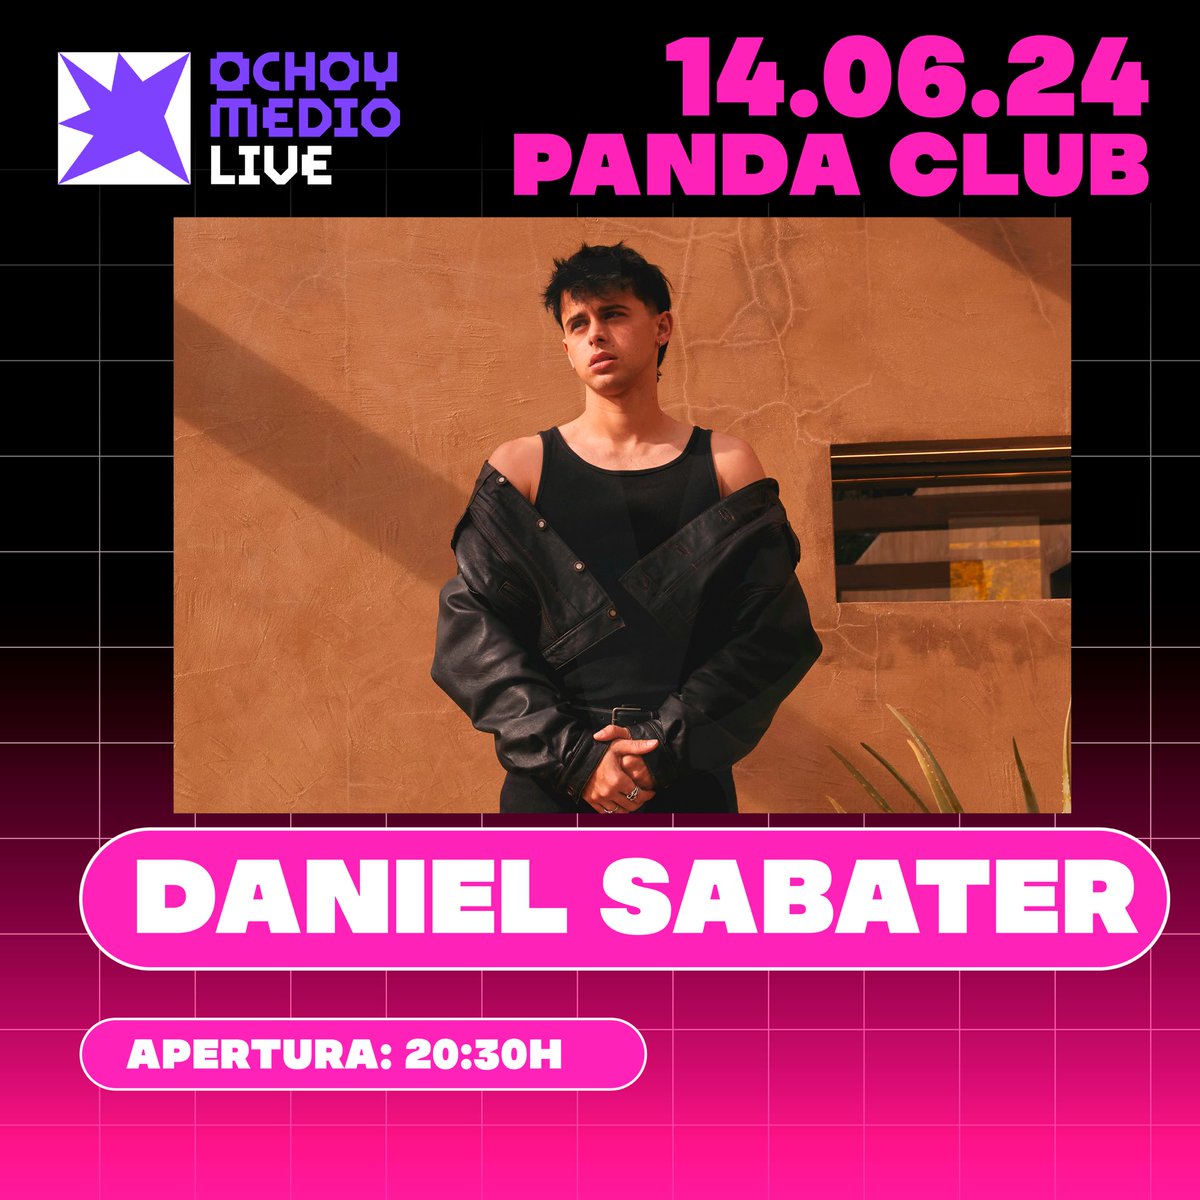 IMPORTANTE: aplazado el concierto de @dddsabater por motivos de salud ❤️‍🩹 ¡Nos vemos el 14 de junio!